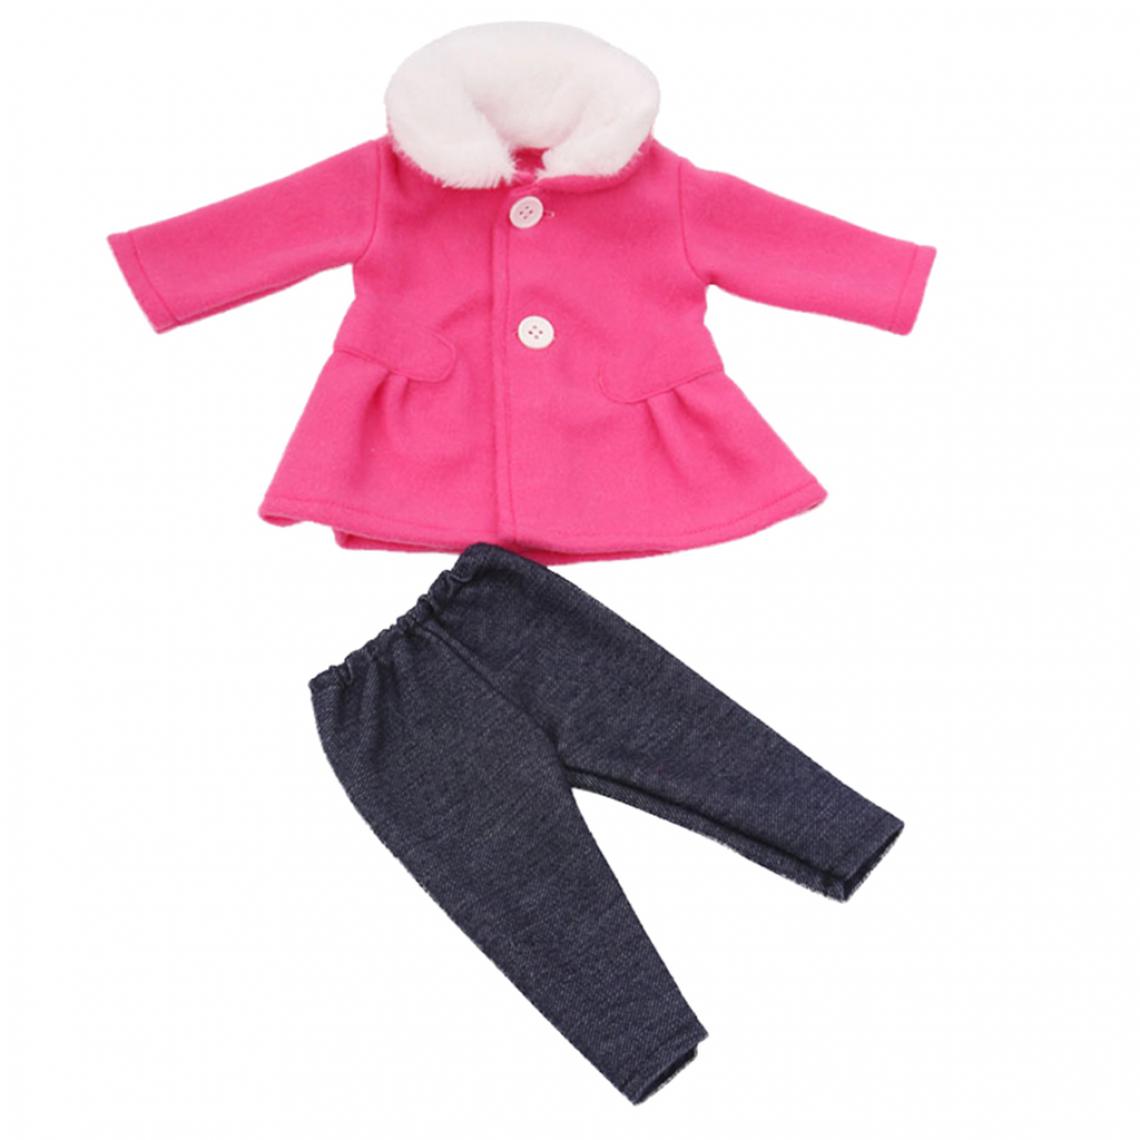 marque generique - 18 pouces fille poupées vêtements pardessus de laine + accessoires de pantalon rose - Maisons de poupées